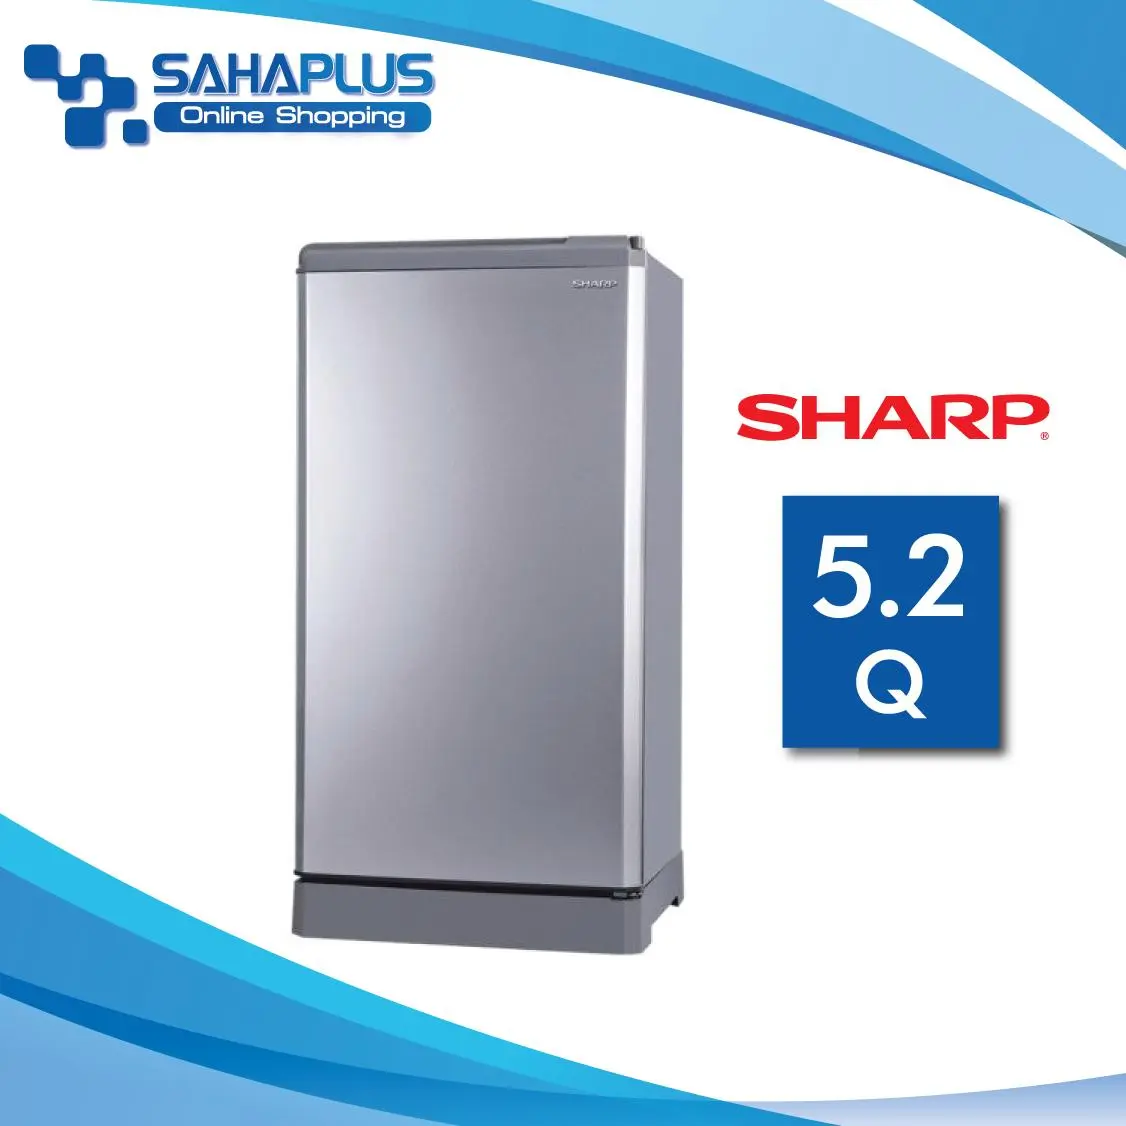 ตู้เย็น SHARP รุ่น SJ-G15S-SL ขนาดความจุ 5.2Q